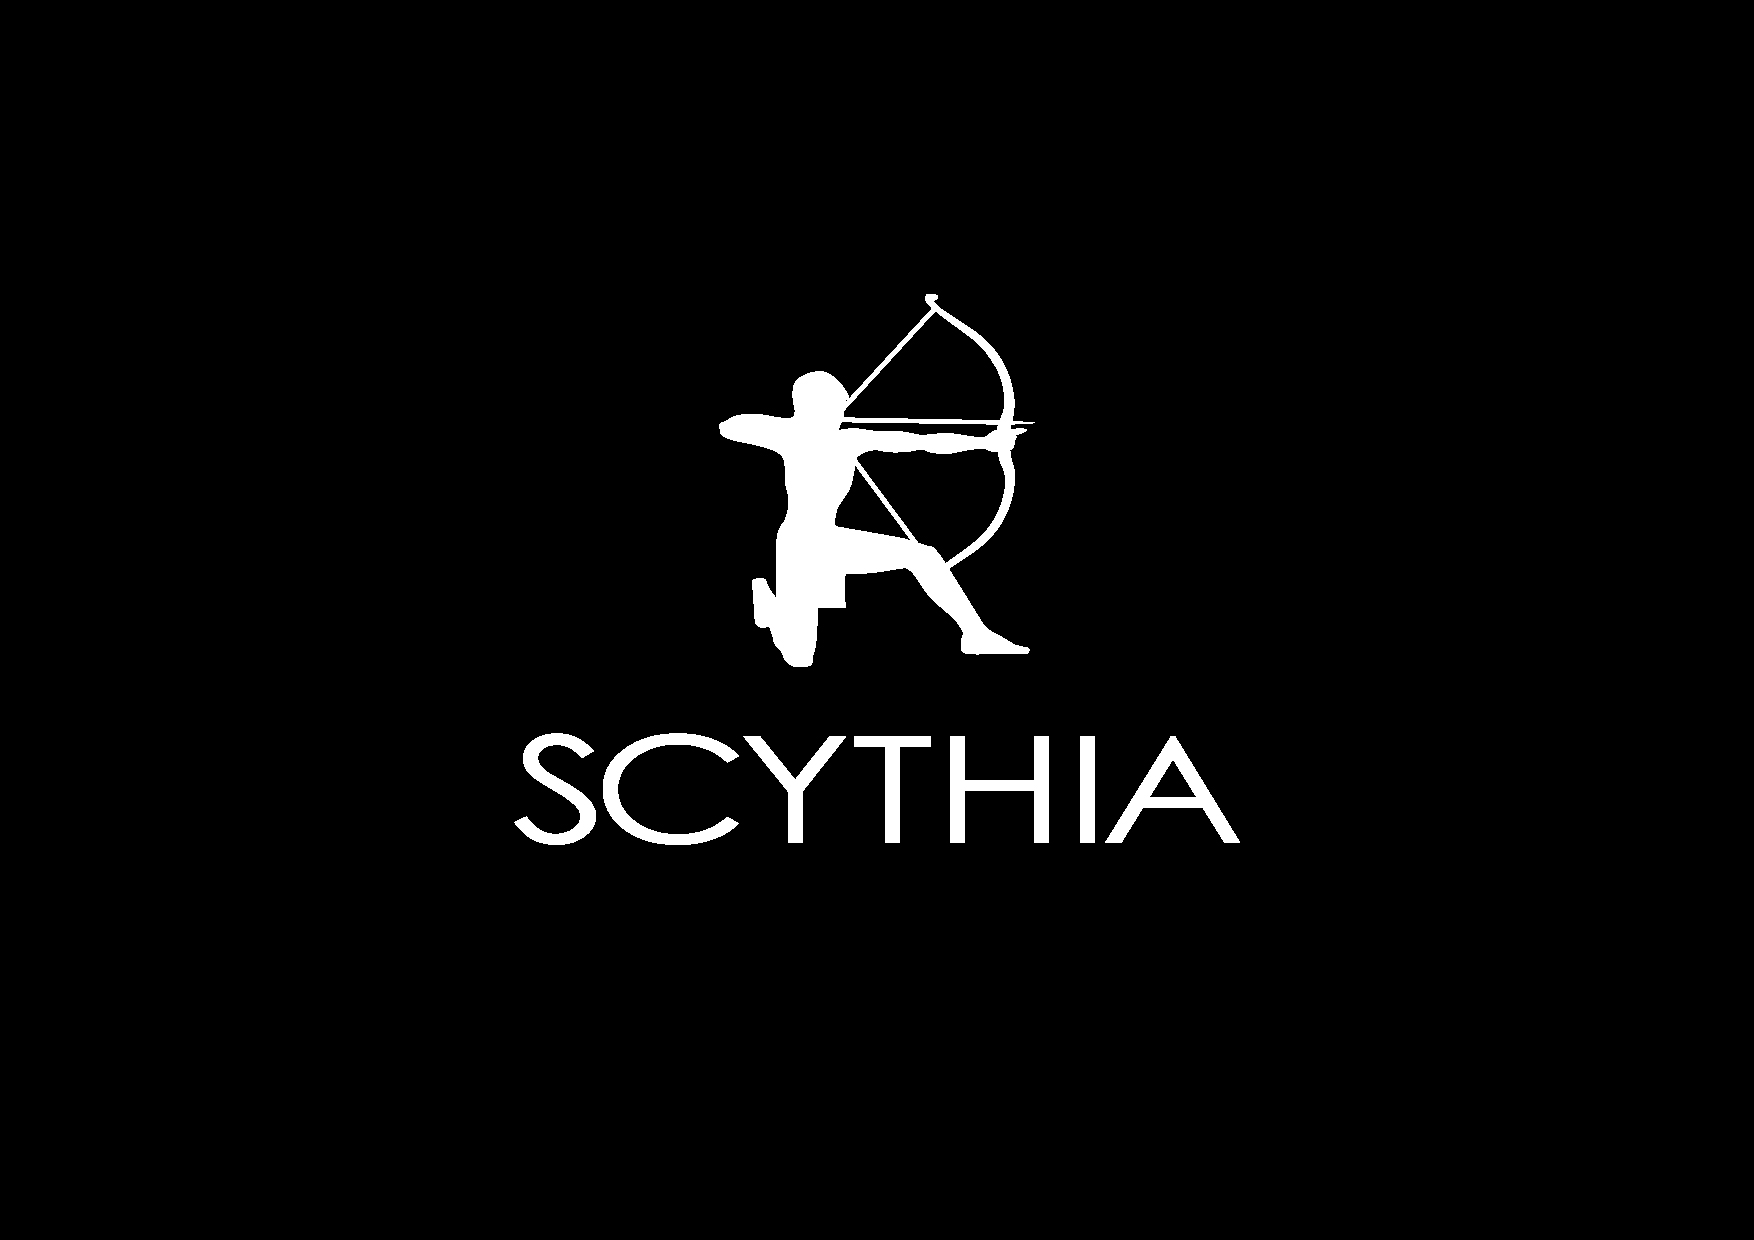 SCYTHIA logo